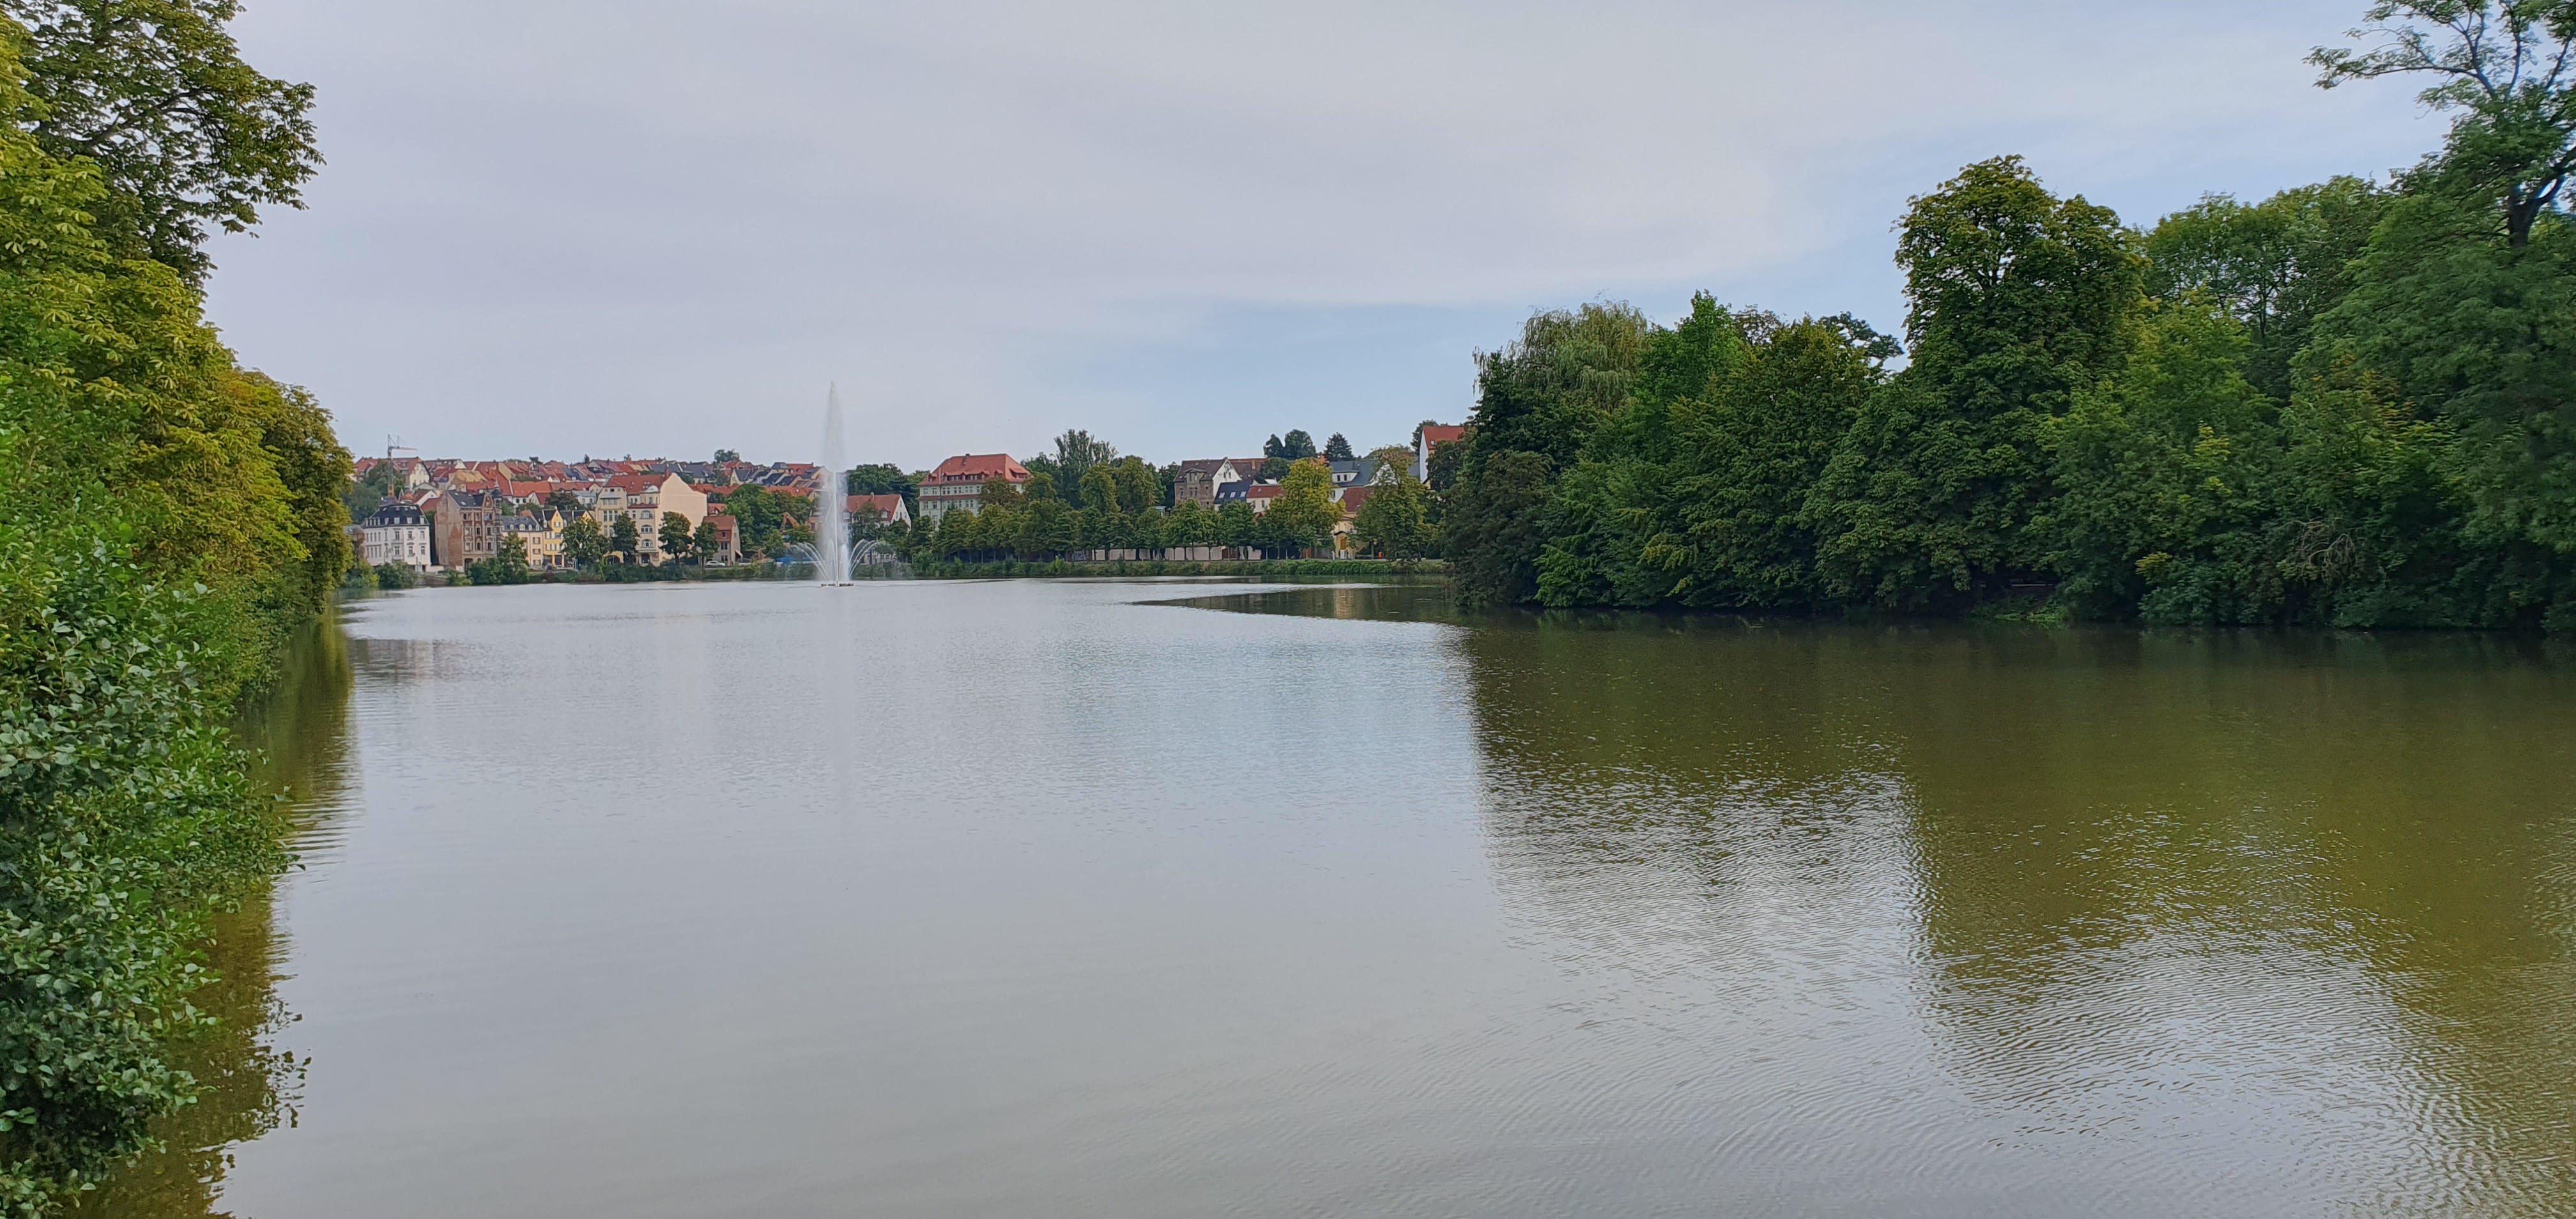 Blick auf Altenburg über den Großen Teich, in der Mitte eine Fontäne